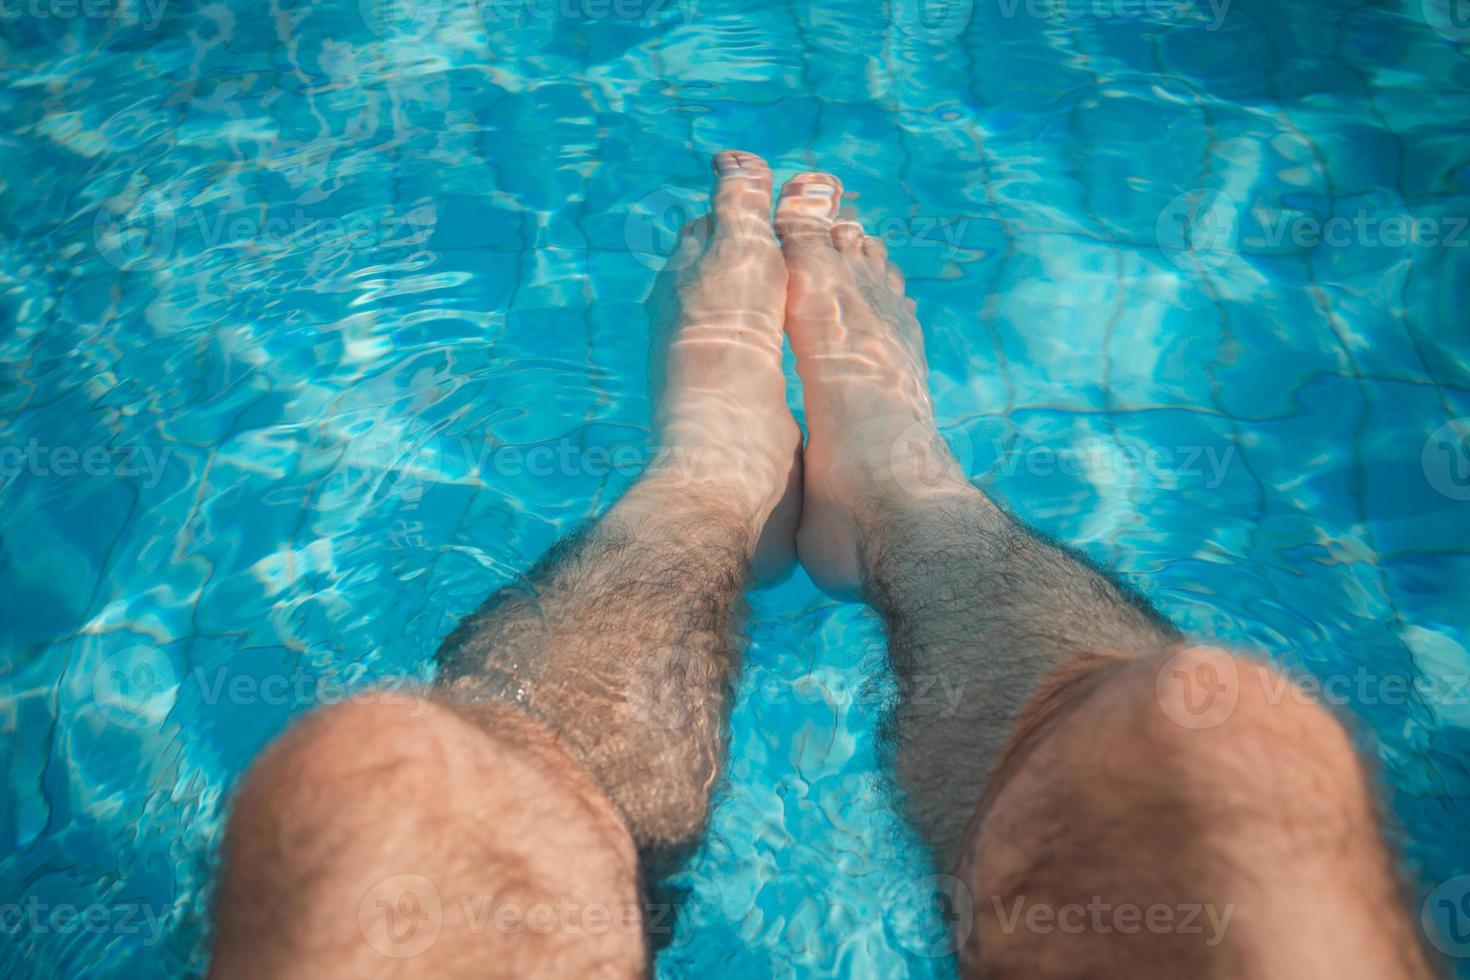 jovem relaxando na piscina com as pernas na água foto